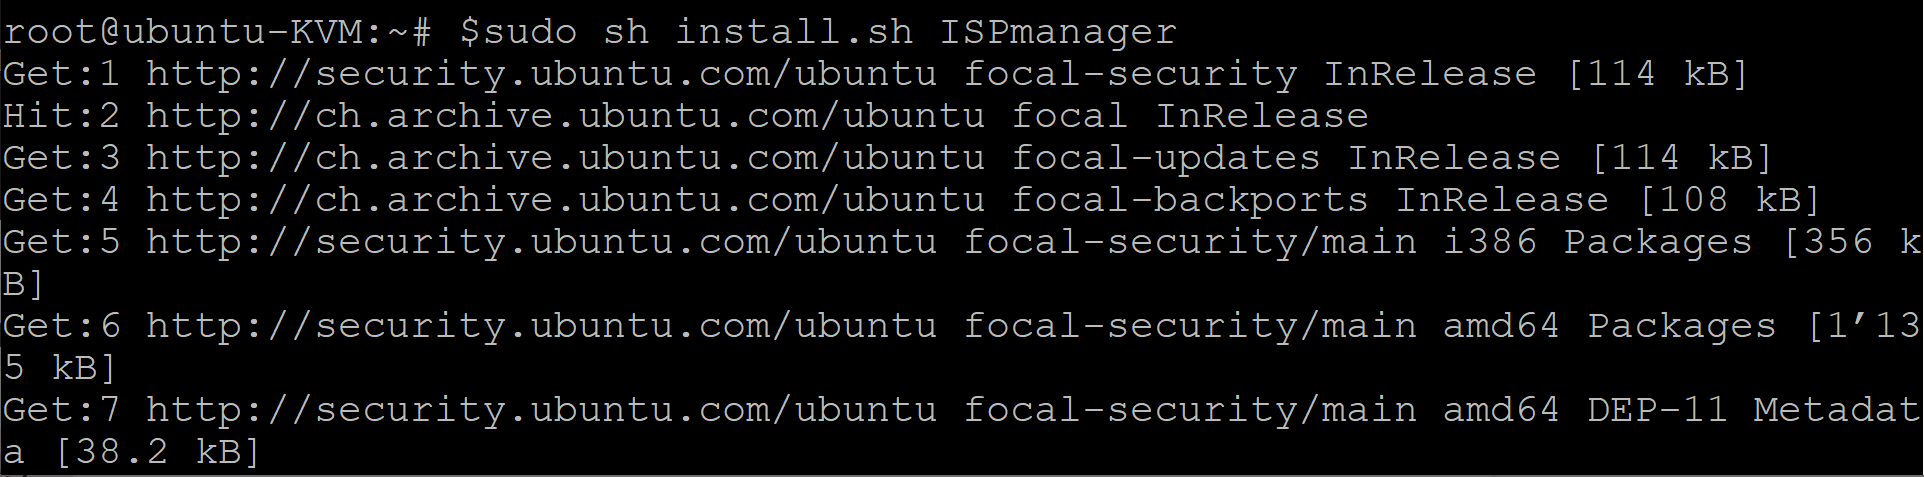 how to install ispmanager on ubuntu